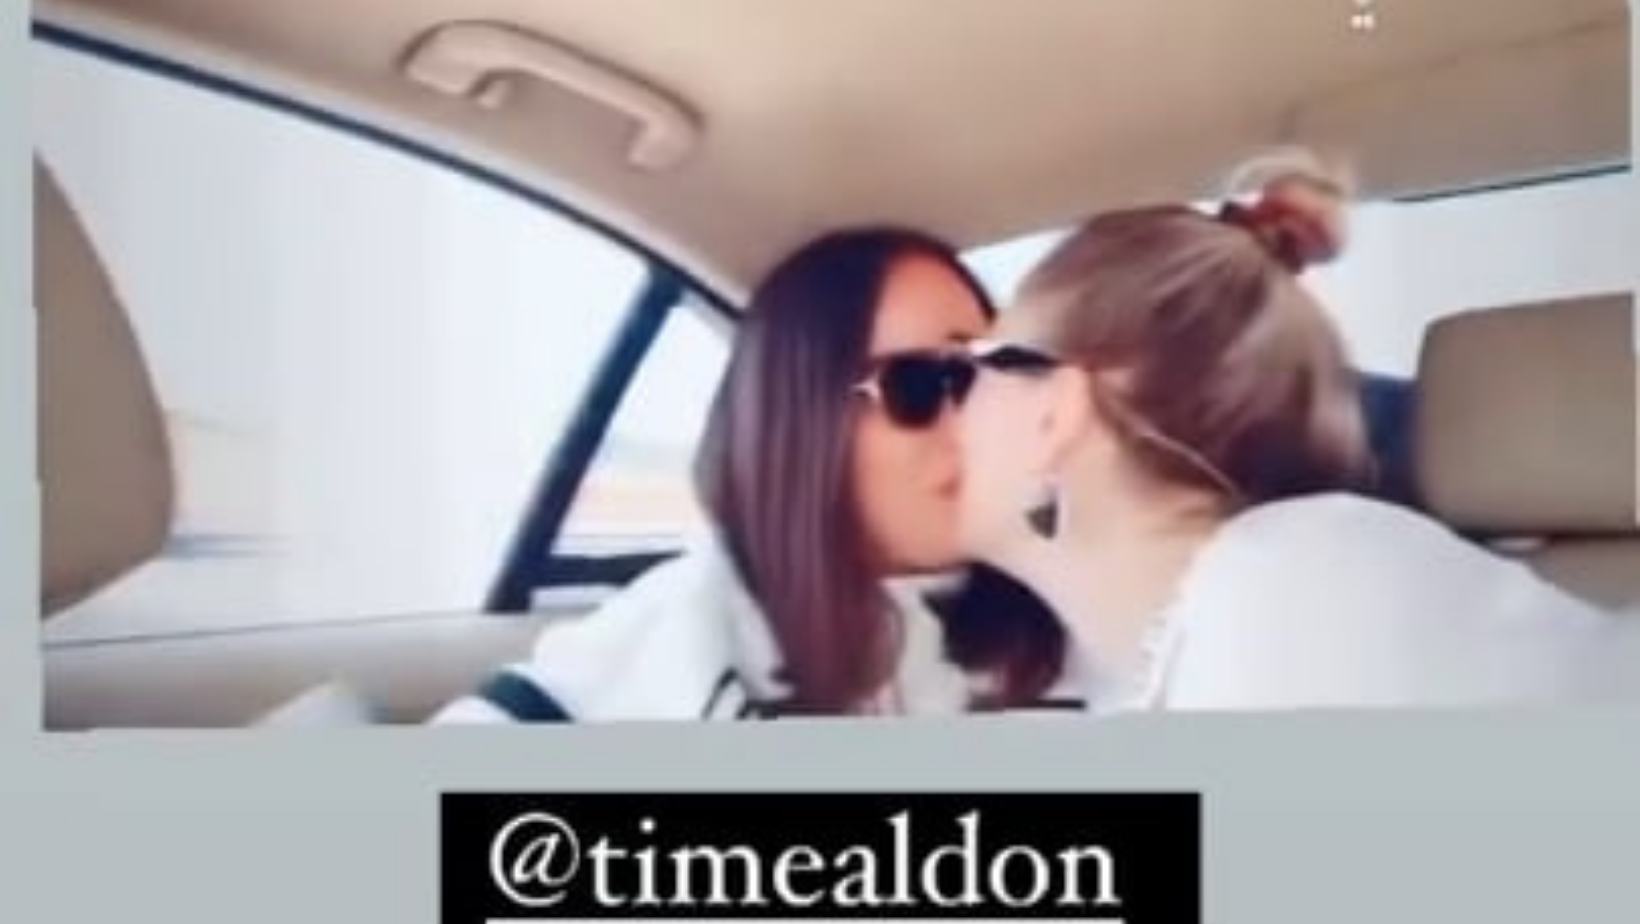  Deputetja e Kuvendit të Kosovës e puth në buzë një vajzë dhe publikon videon